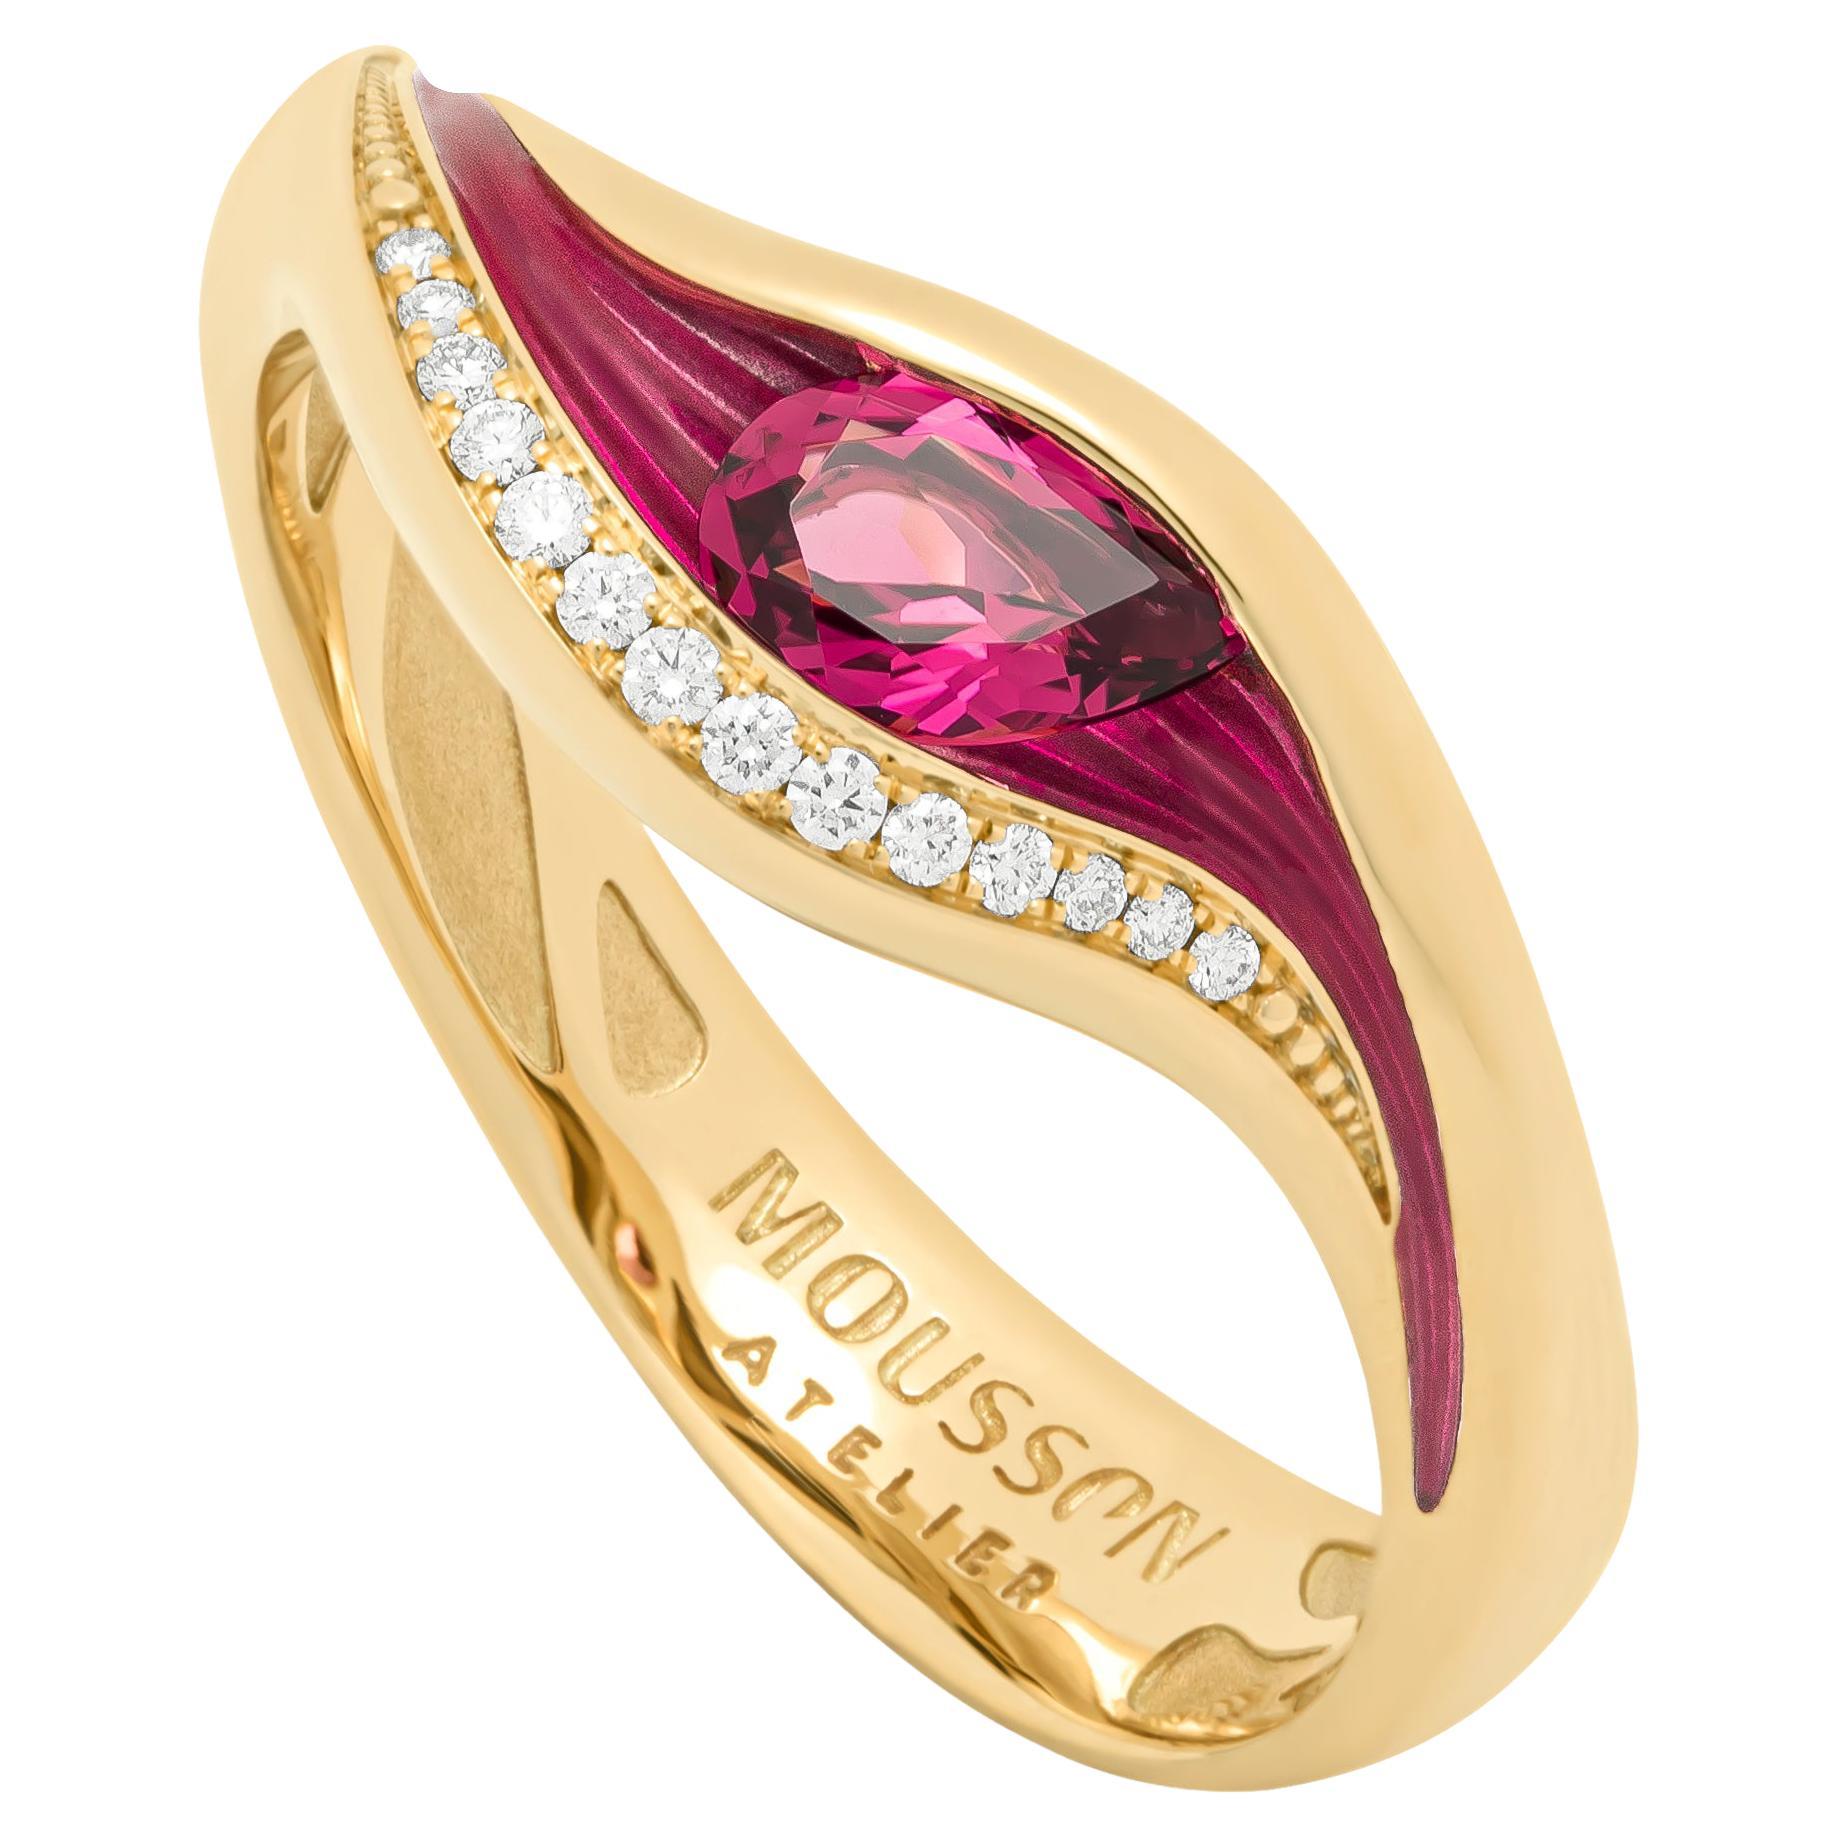 Bague en or jaune 18 carats avec tourmaline rose, diamants et émail, couleurs fondues